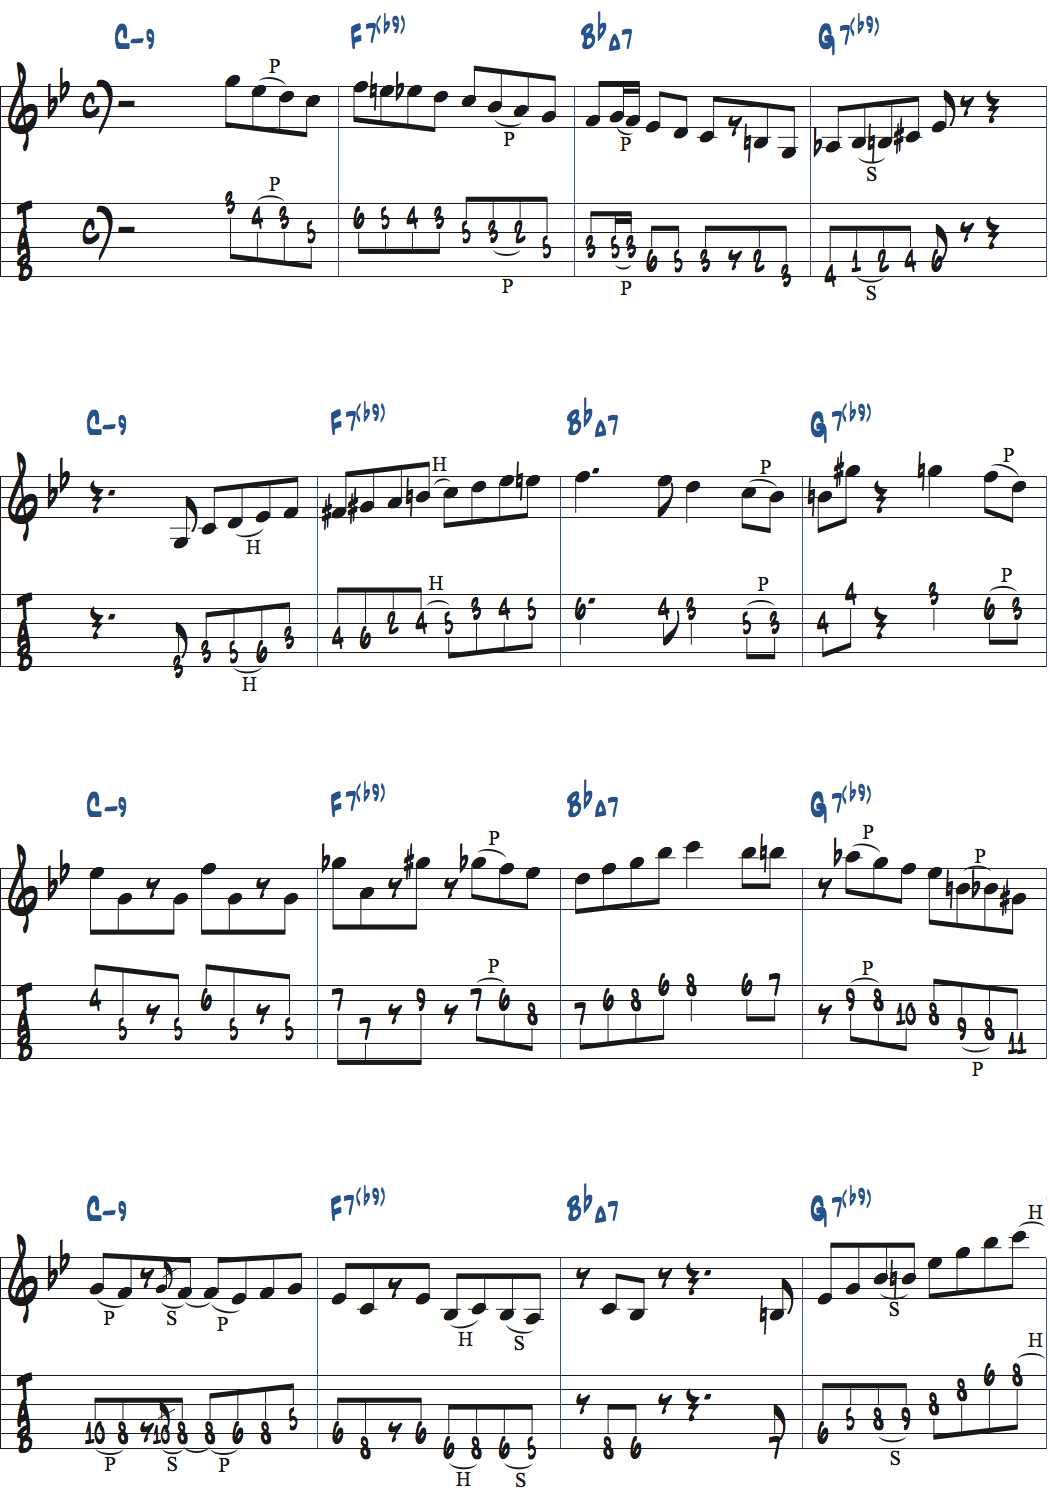 Cm9-F7(b9)-BbMa7-G7(b9)でのアドリブ例楽譜ページ1